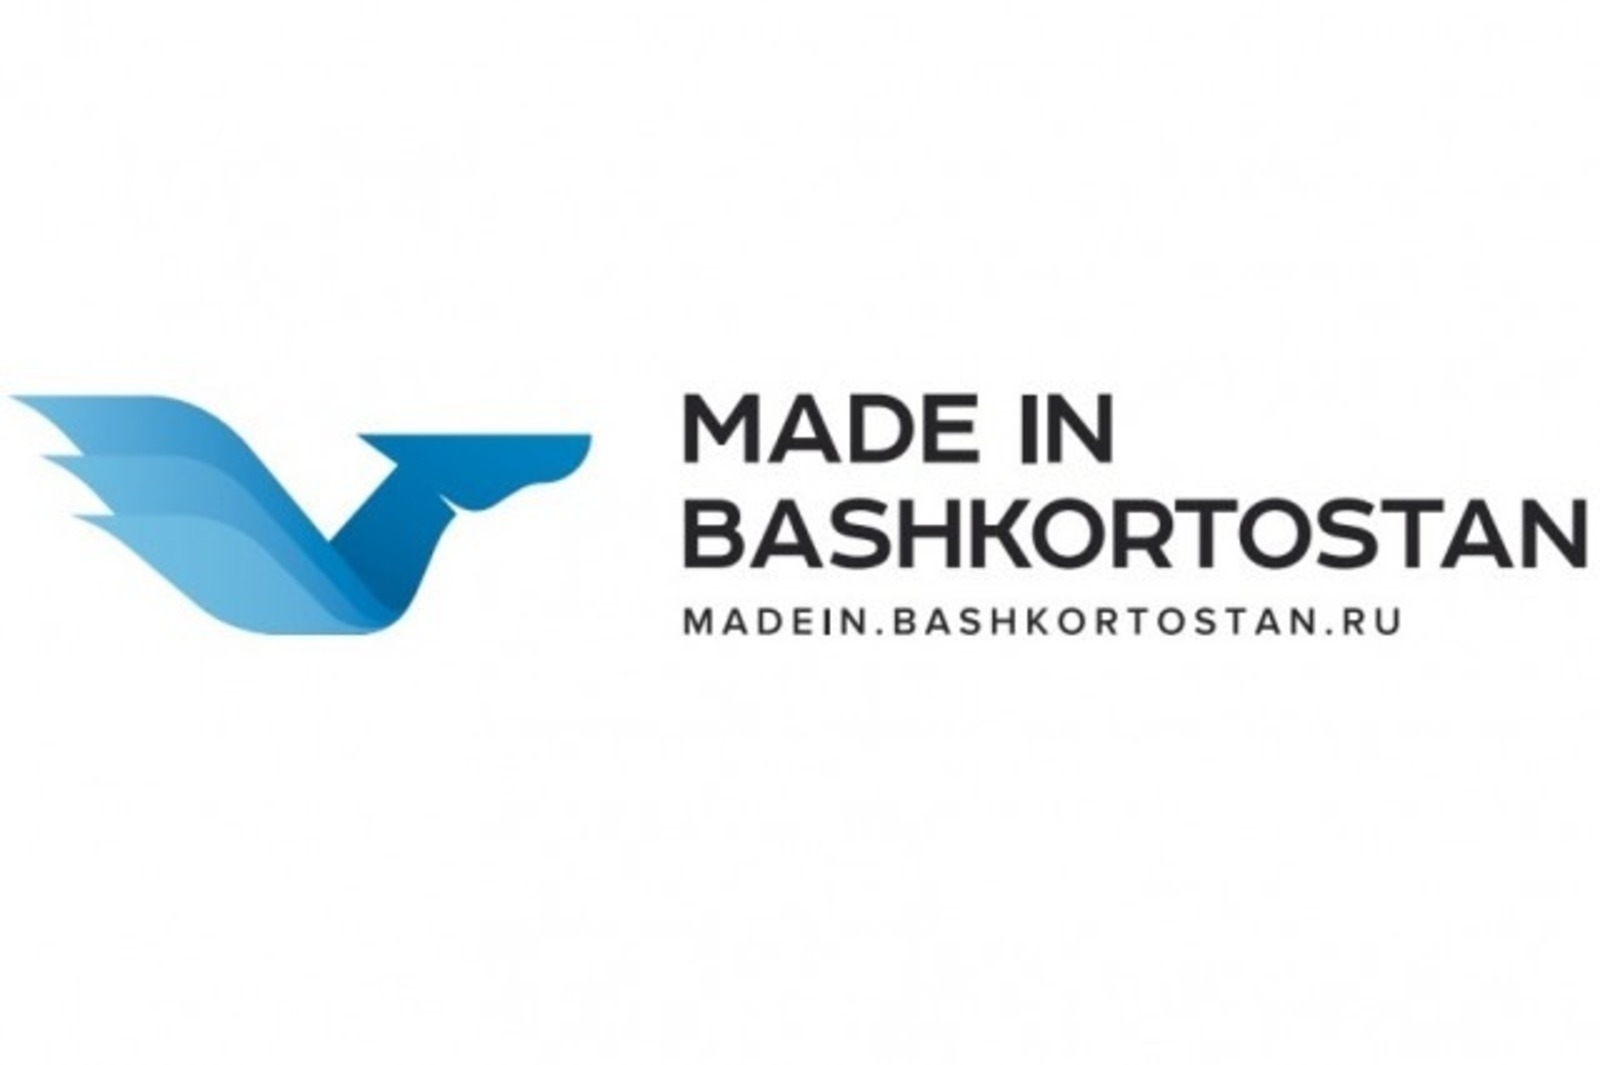 Бренд «Сделано в Башкортостане» будет поддержан в экспортном варианте «Сделано в России»